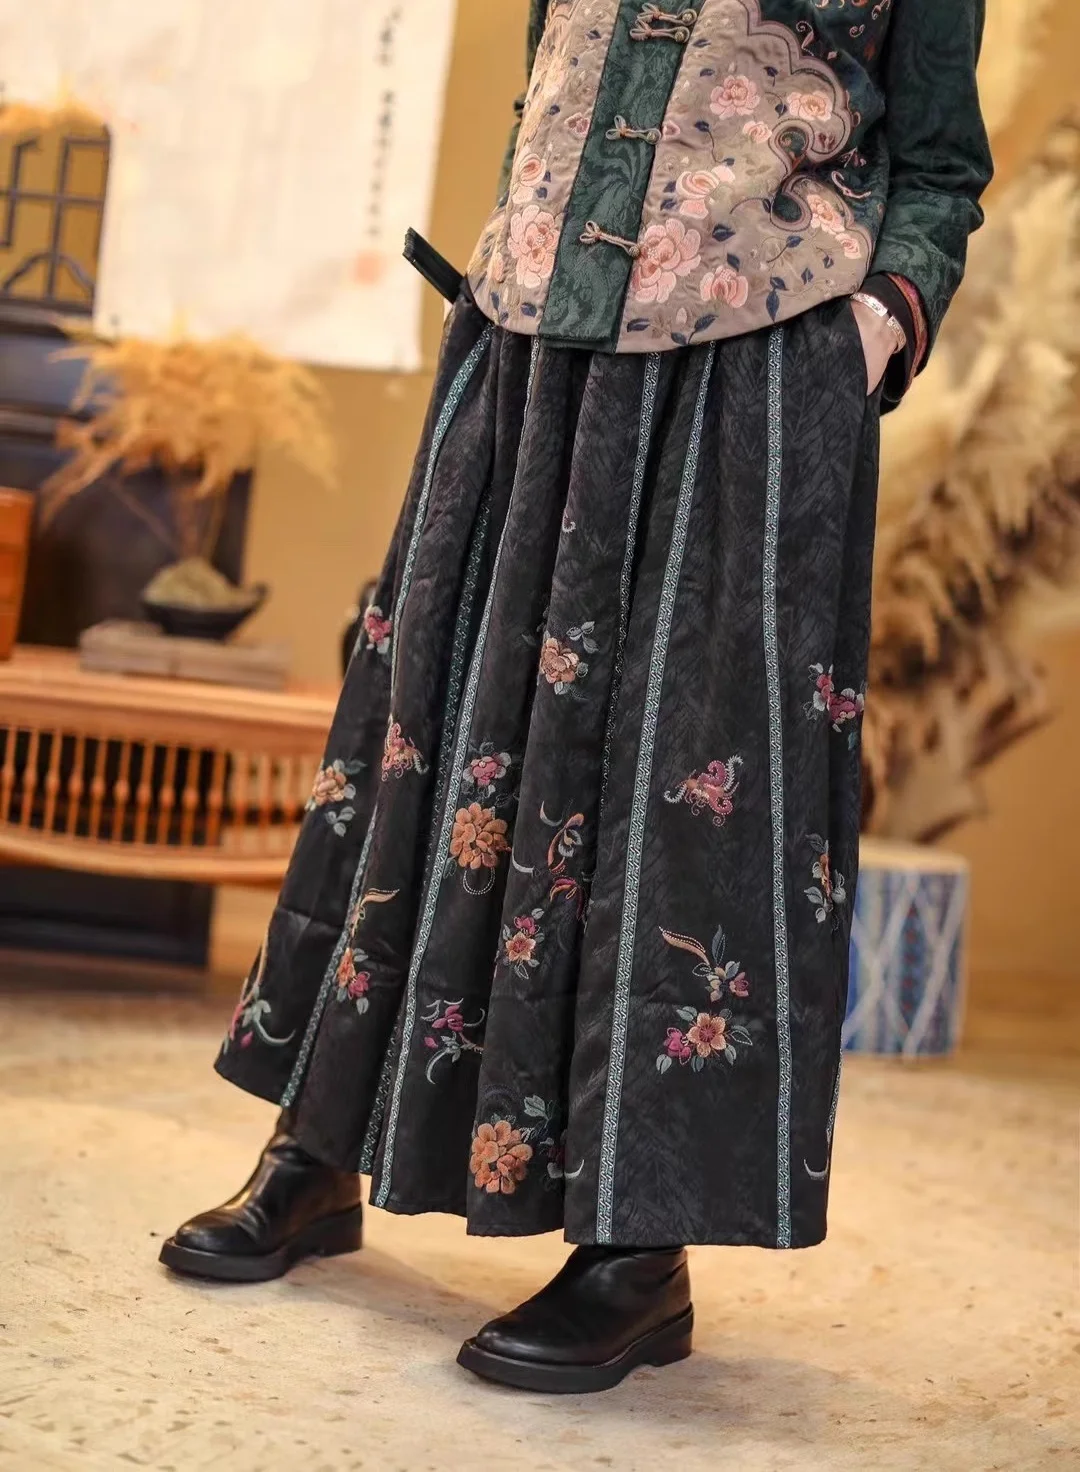 

Top Women's winter skirt National style Elastic waist long skirt Tencel jacquard embroidery black skirts vintage full-skirted